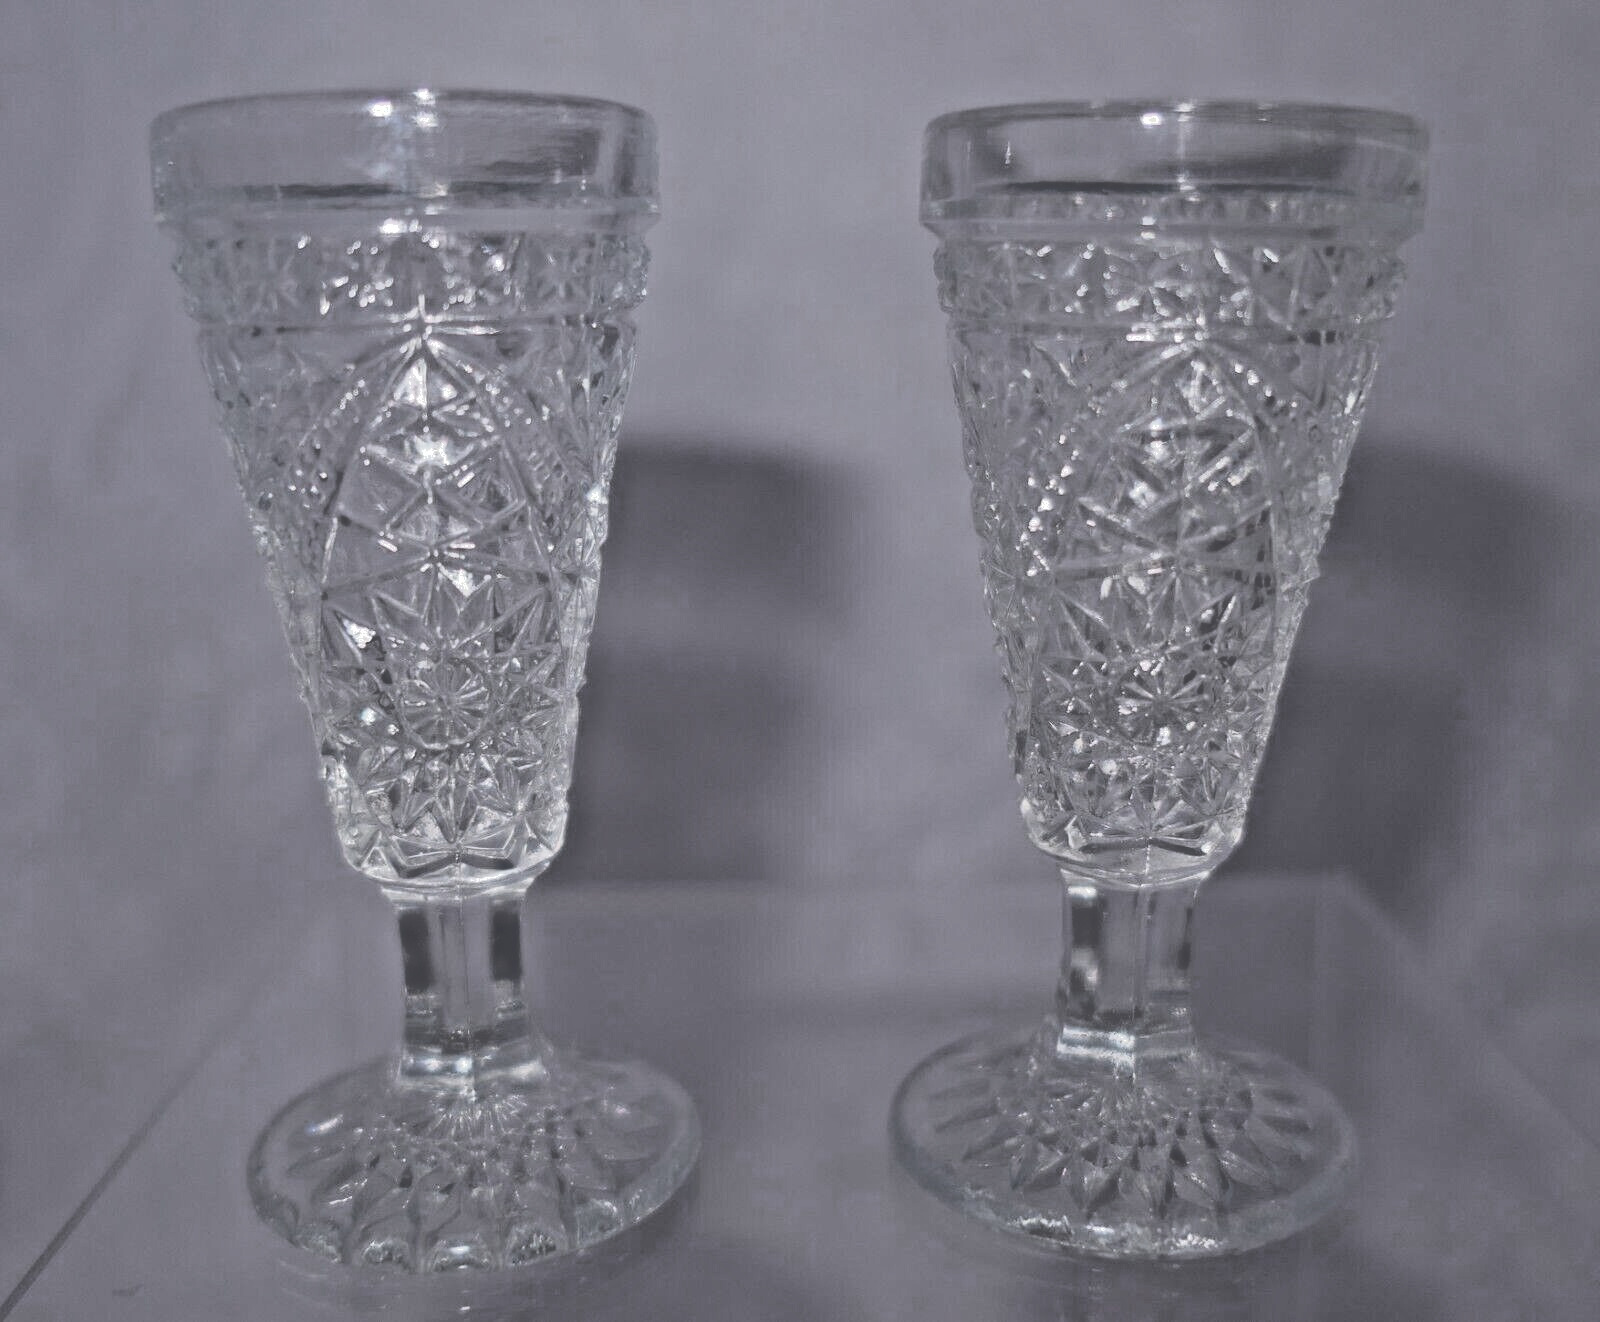 2 VTG Libbey Hobstar Pressed Glass Shot / Cordial Glasses Stem & Fluted Rim